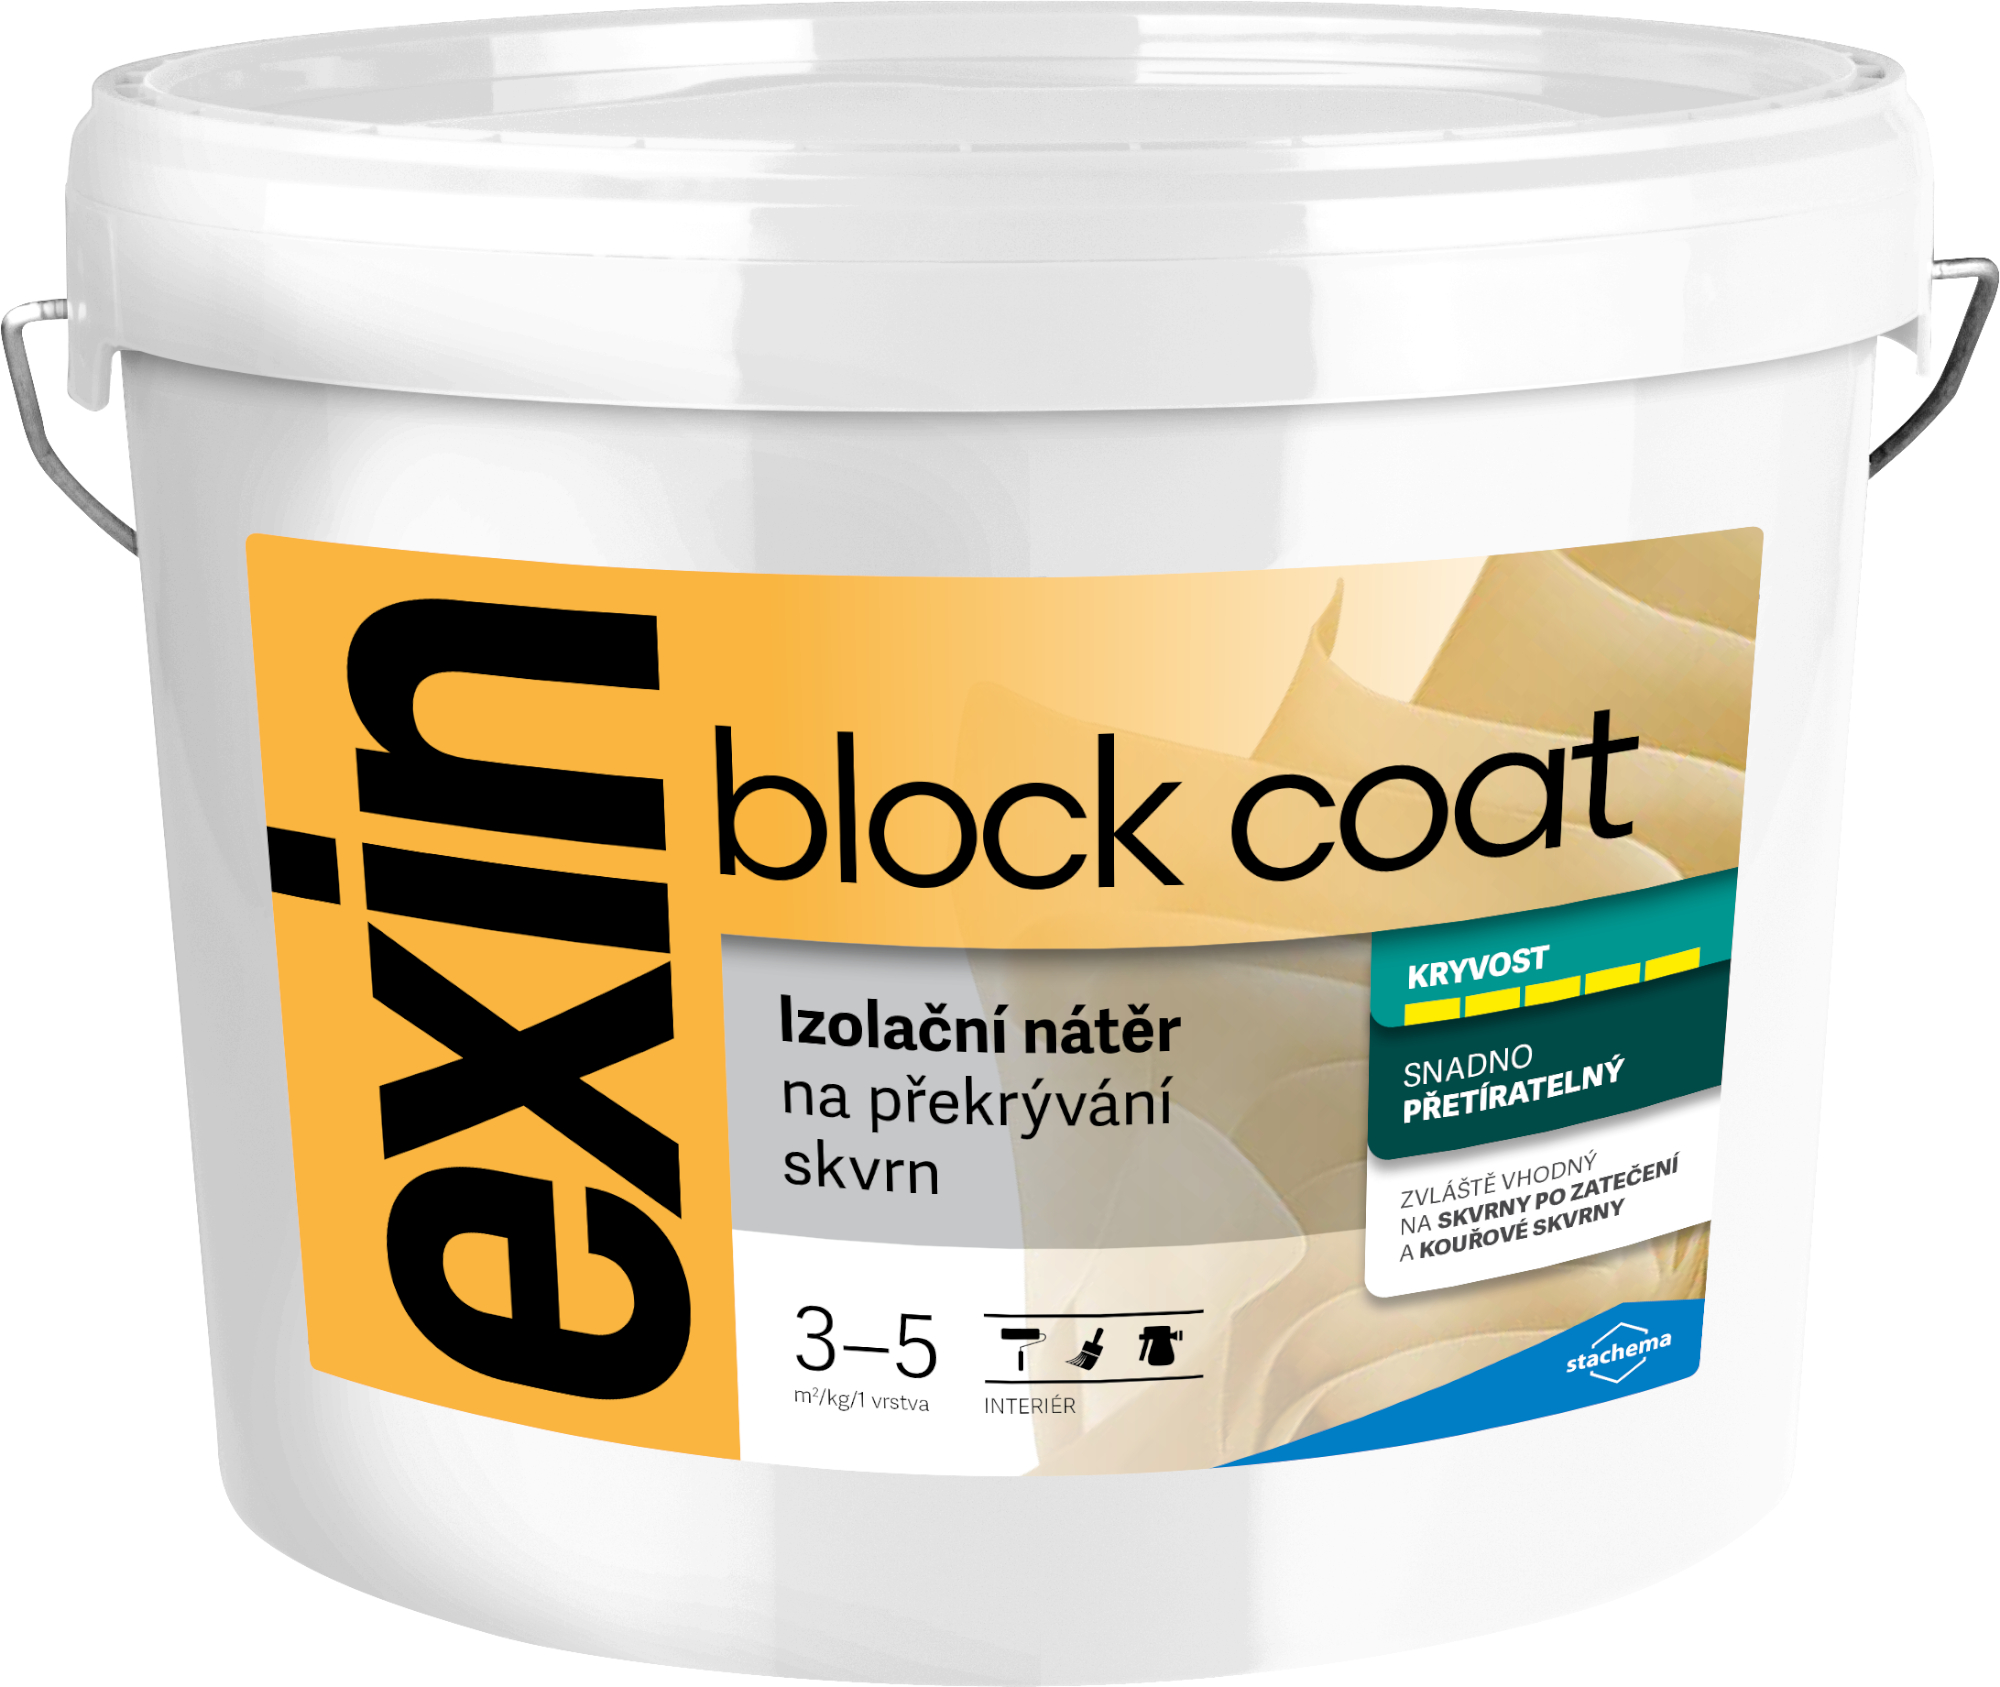 Nátěr k zakrývání skvrn Stachema Exin Block Coat bílá, 12 kg